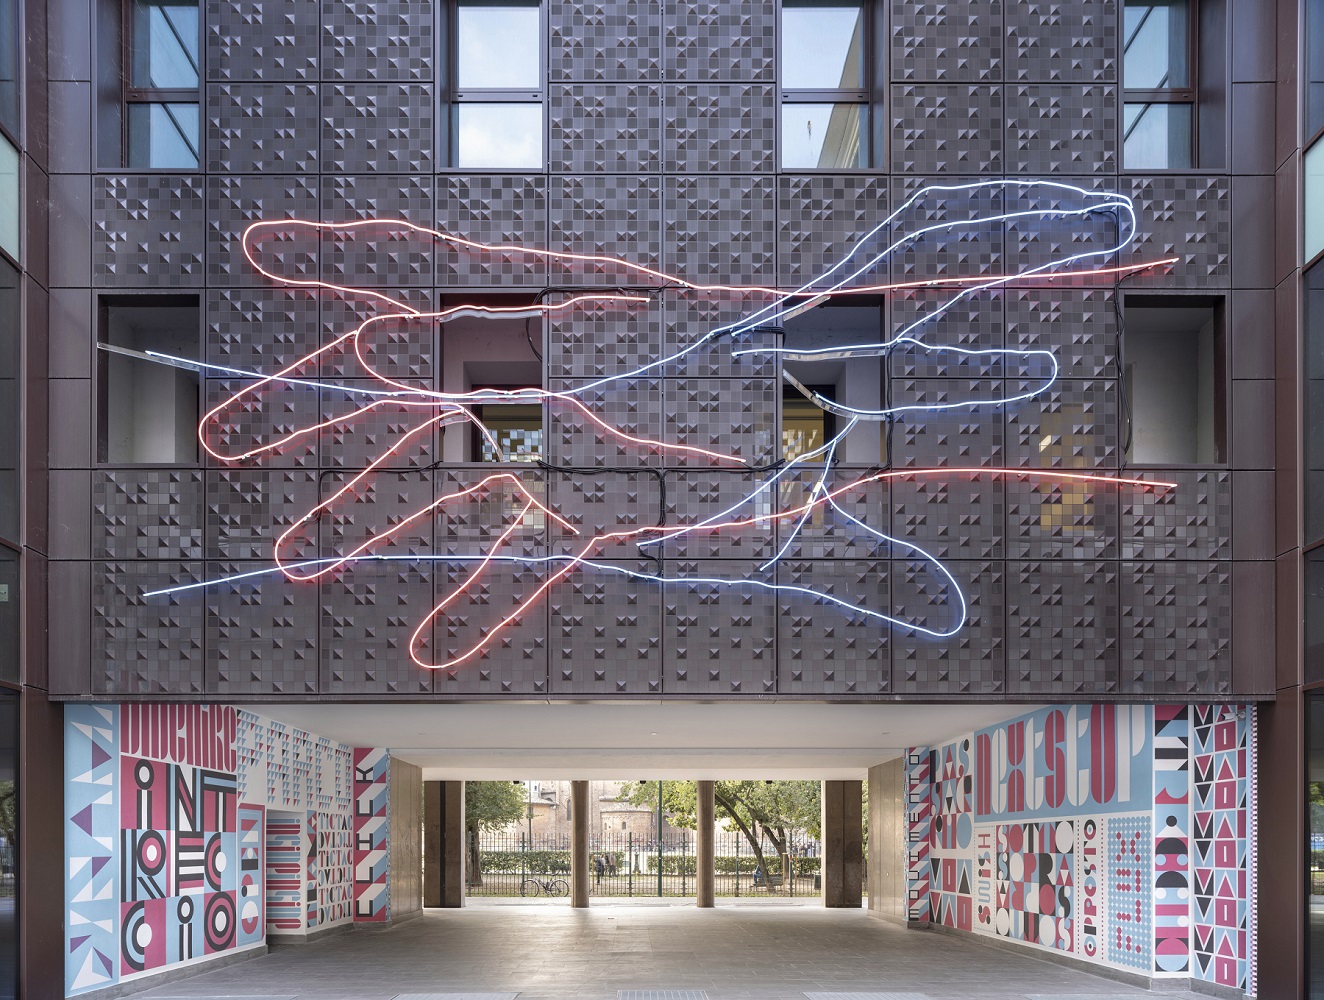 Vetra Building, le opere di Patrick Tuttofuoco e Cabaret Typographie - Ph. BAMSphoto, 2022